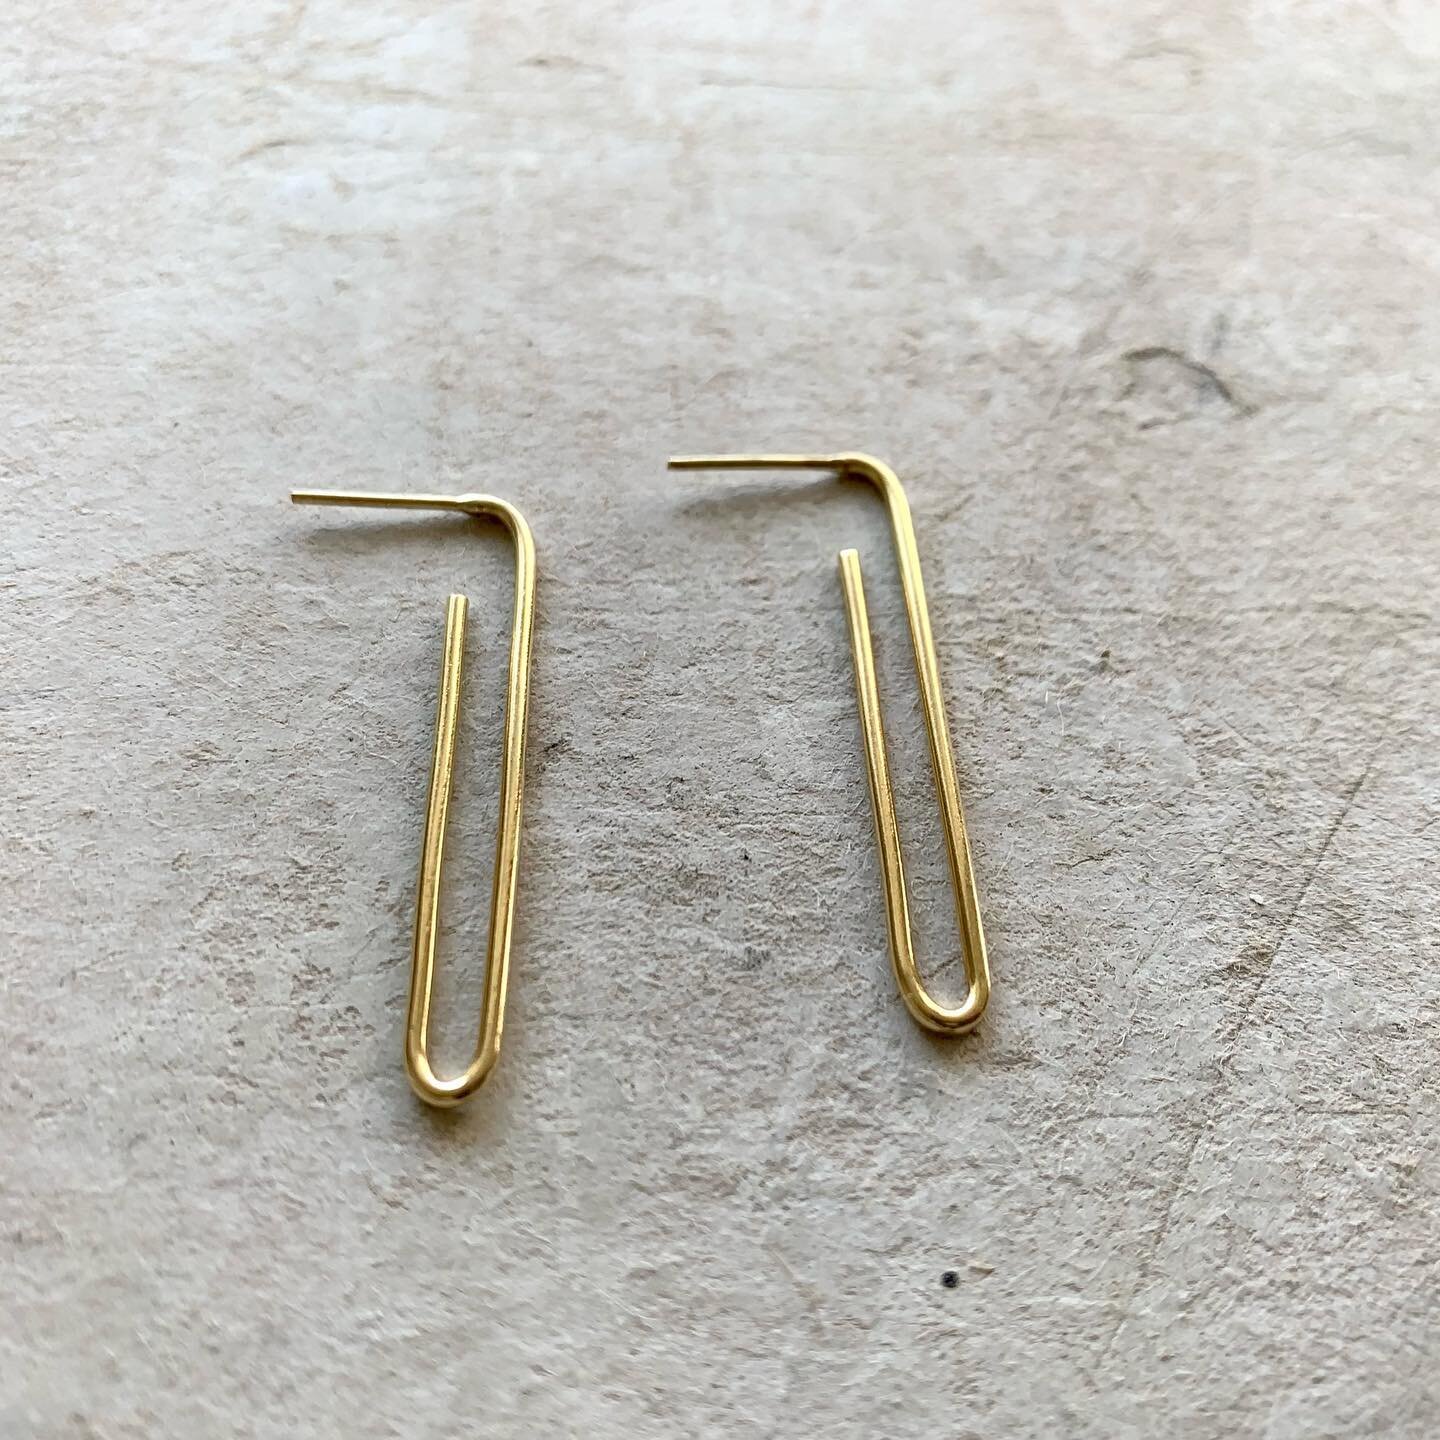 18k gold pin earrings ✨✨✨